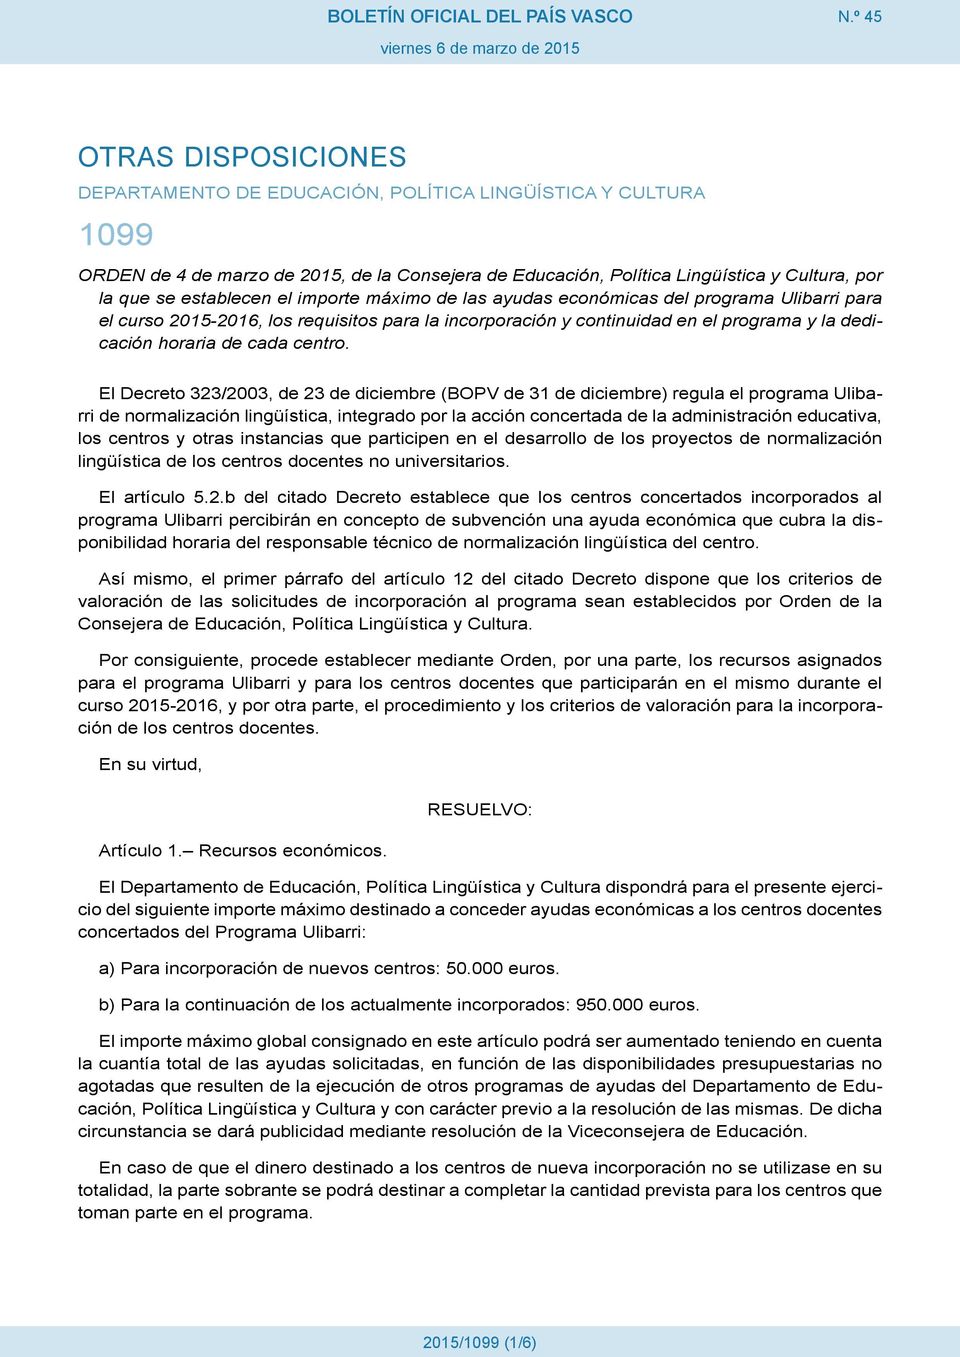 El Decreto 323/2003, de 23 de diciembre (BOPV de 31 de diciembre) regula el programa Ulibarri de normalización lingüística, integrado por la acción concertada de la administración educativa, los